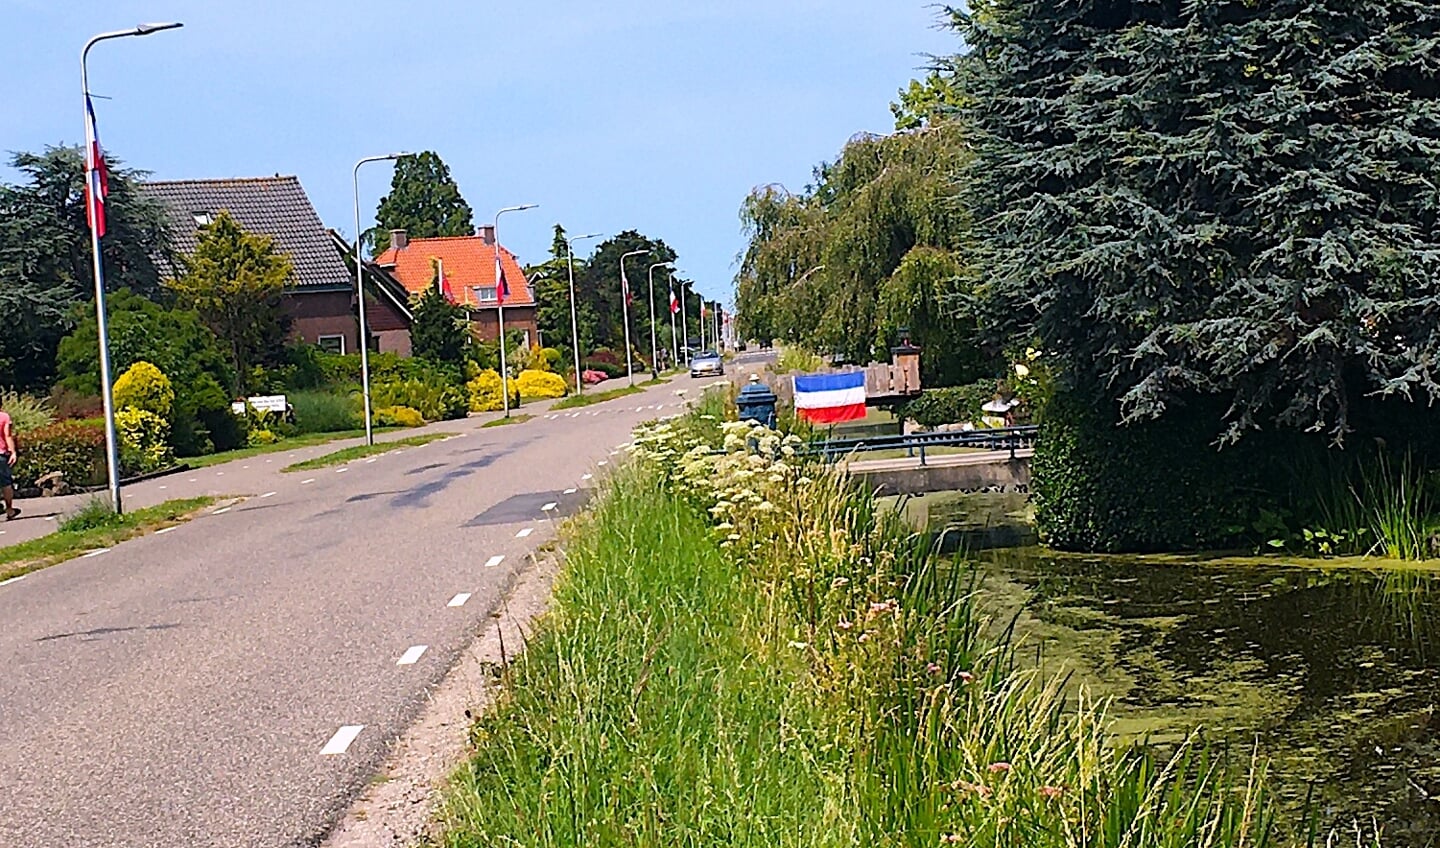 In het buitengebied van Alphen zie je veel omgekeerde vlaggen.